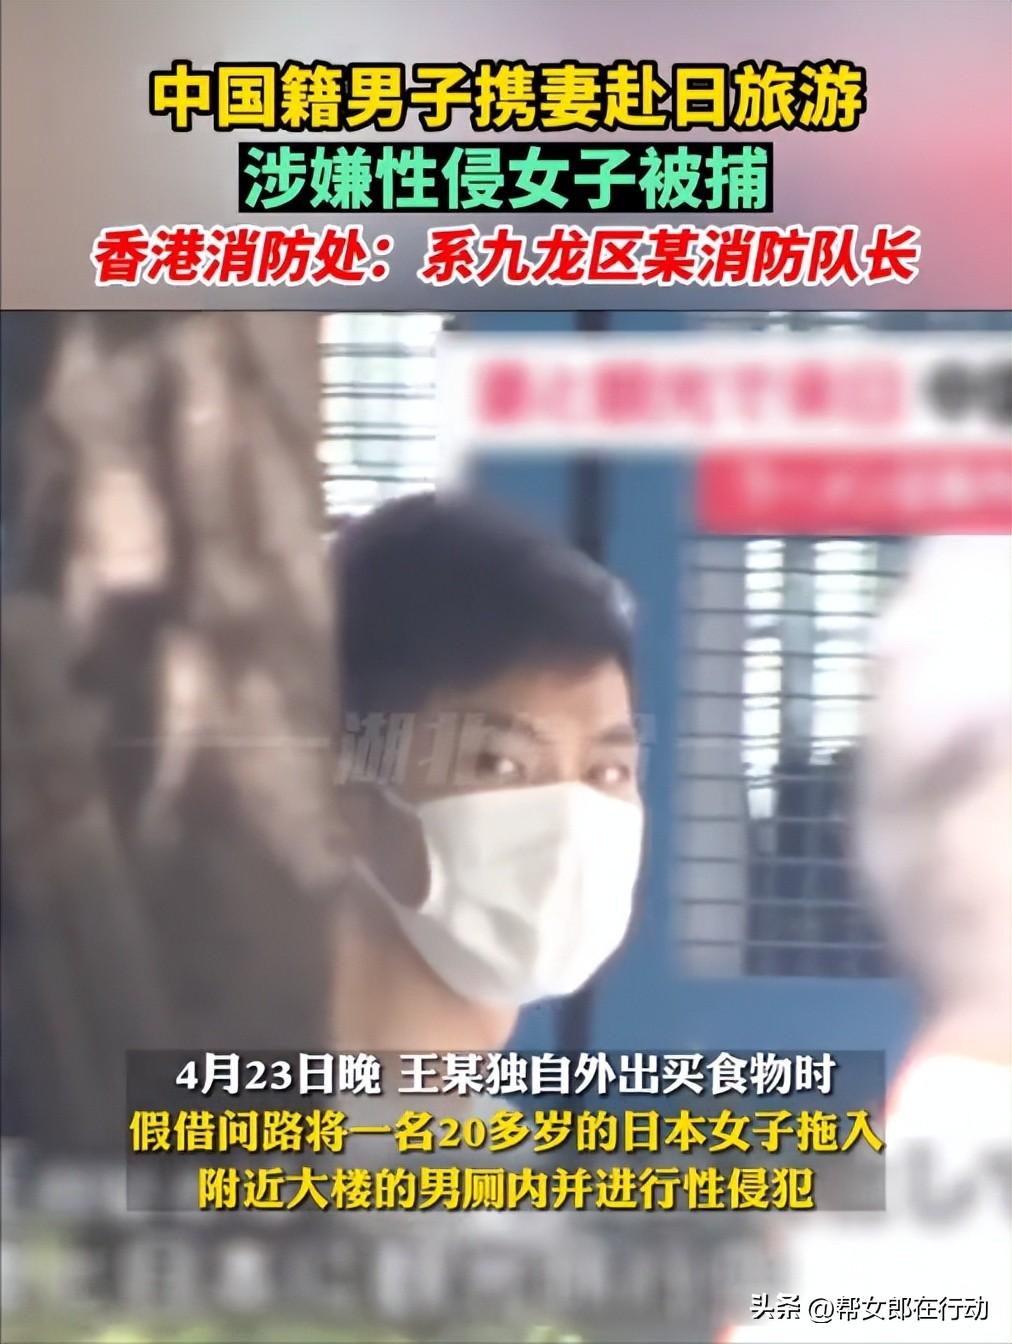 中国籍男子日本涉嫌强奸被捕，事发时正与妻子在日旅游，系香港某消防队队长